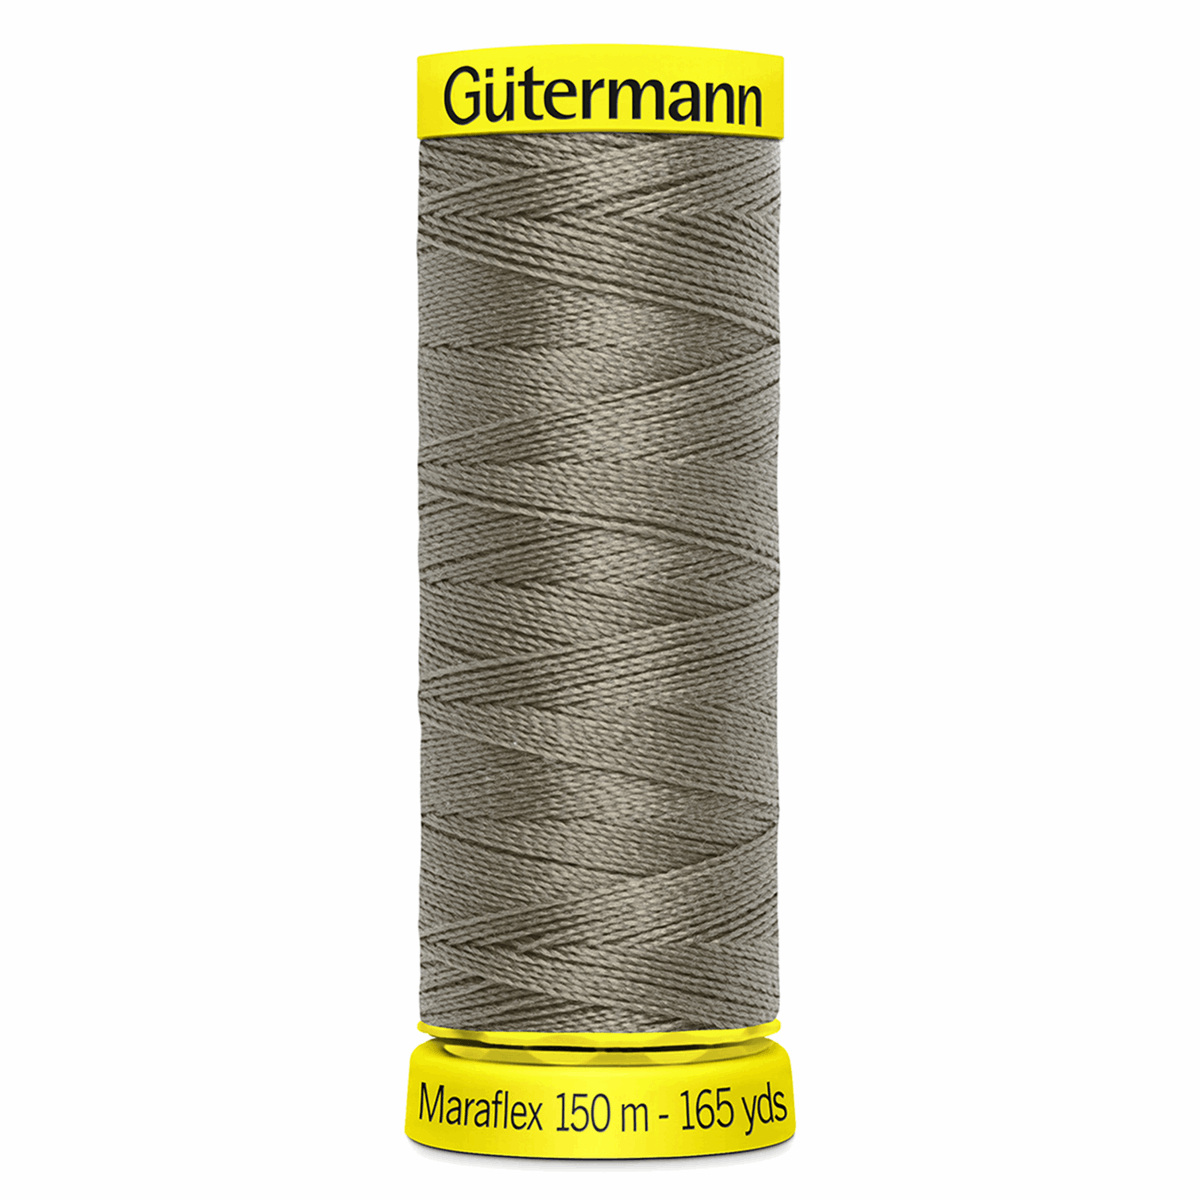 Gutermann Maraflex Elastic Sewing Thread 150m Mushroom 727